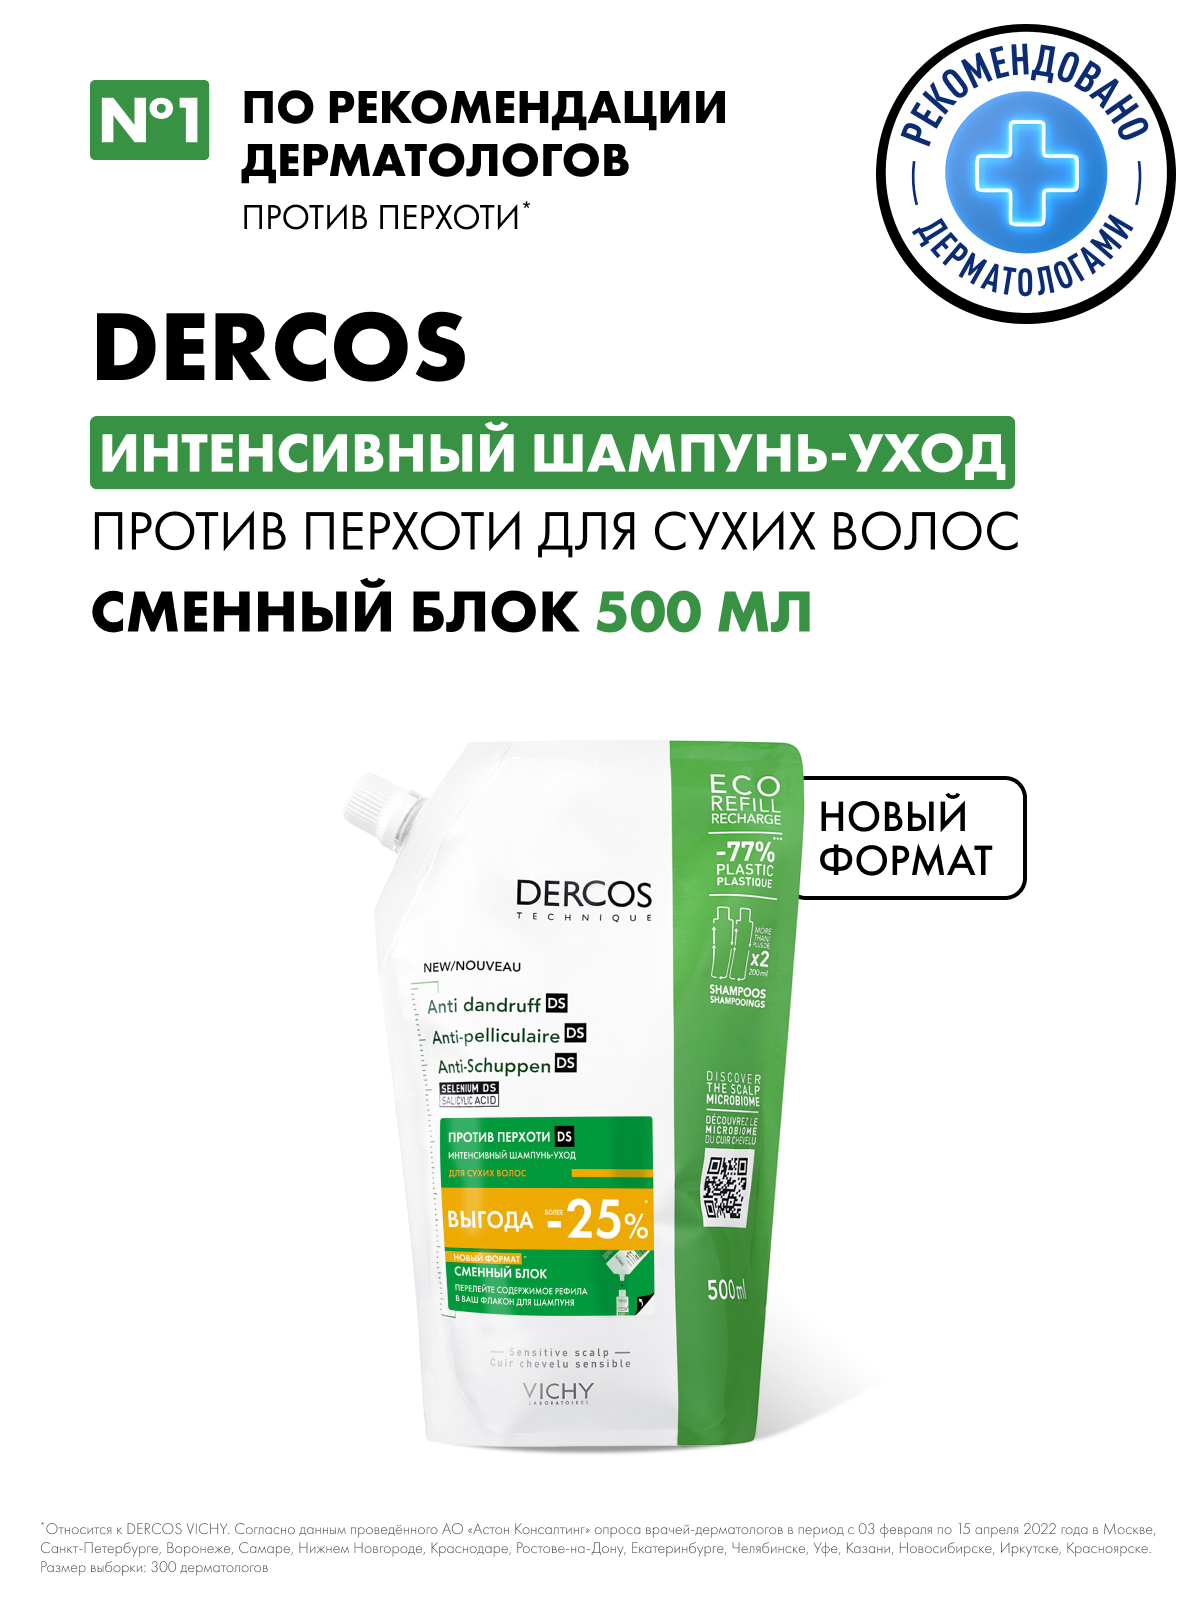 Vichy DERCOS Против перхоти DS Интенсивный шампунь-уход для сухих волос - сменный блок (рефилл) 500 мл